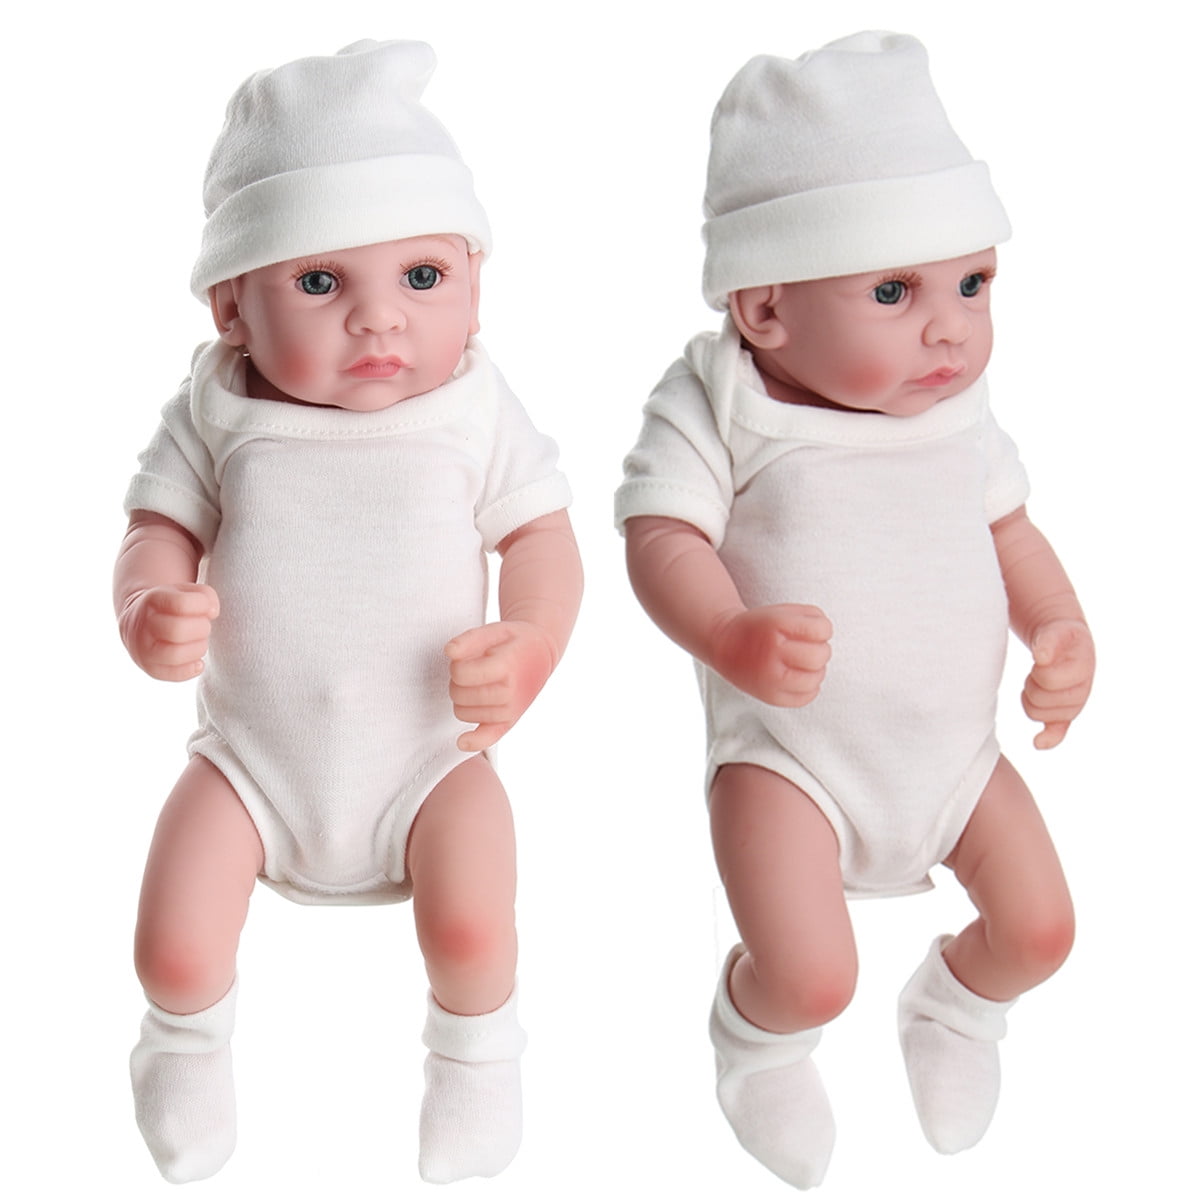 Child Friendly Gift Newborn Realistic Lifelike Reborn Baby Dolls Boys or Girls 